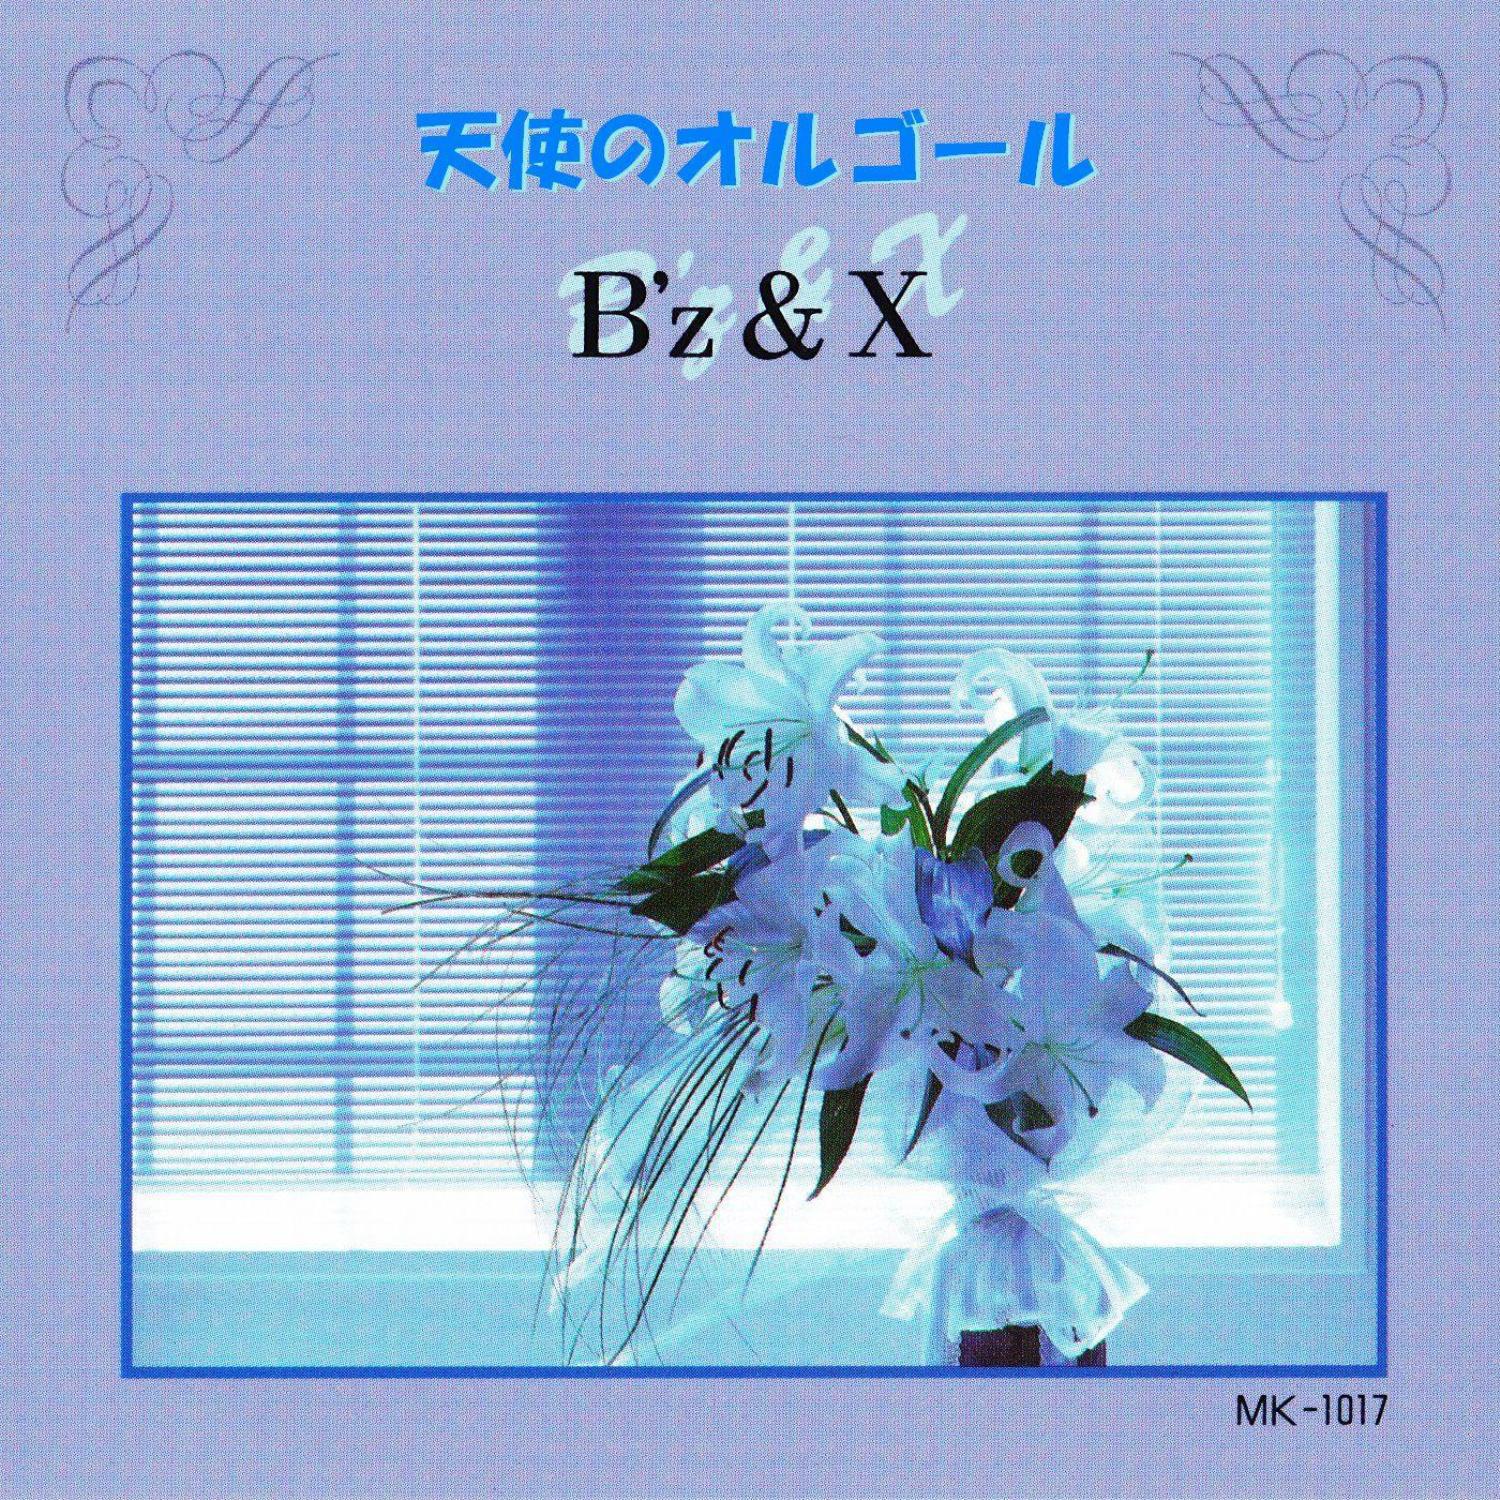 Angel's Music Box - Kurenai